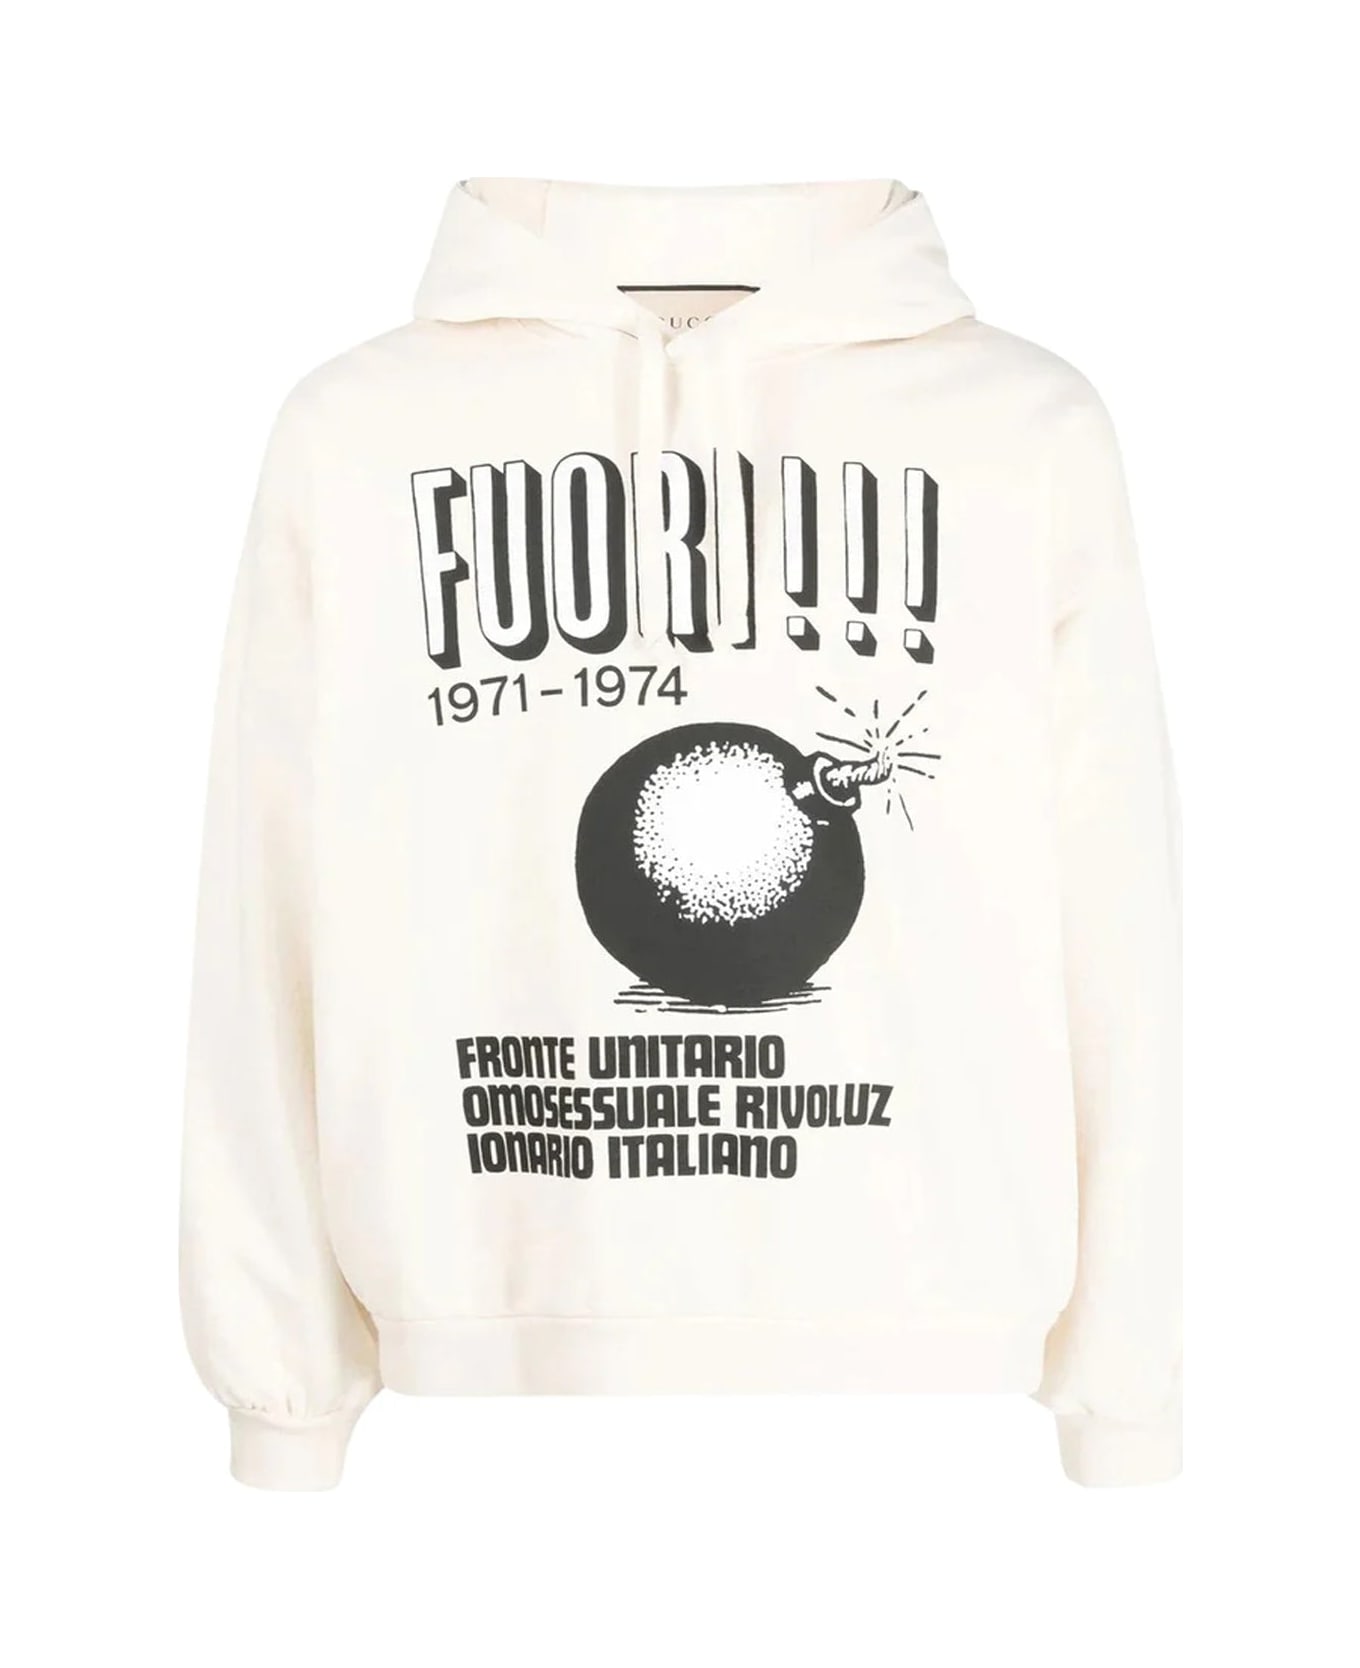 Gucci Printed Hoodie Sweatshirt - Beige